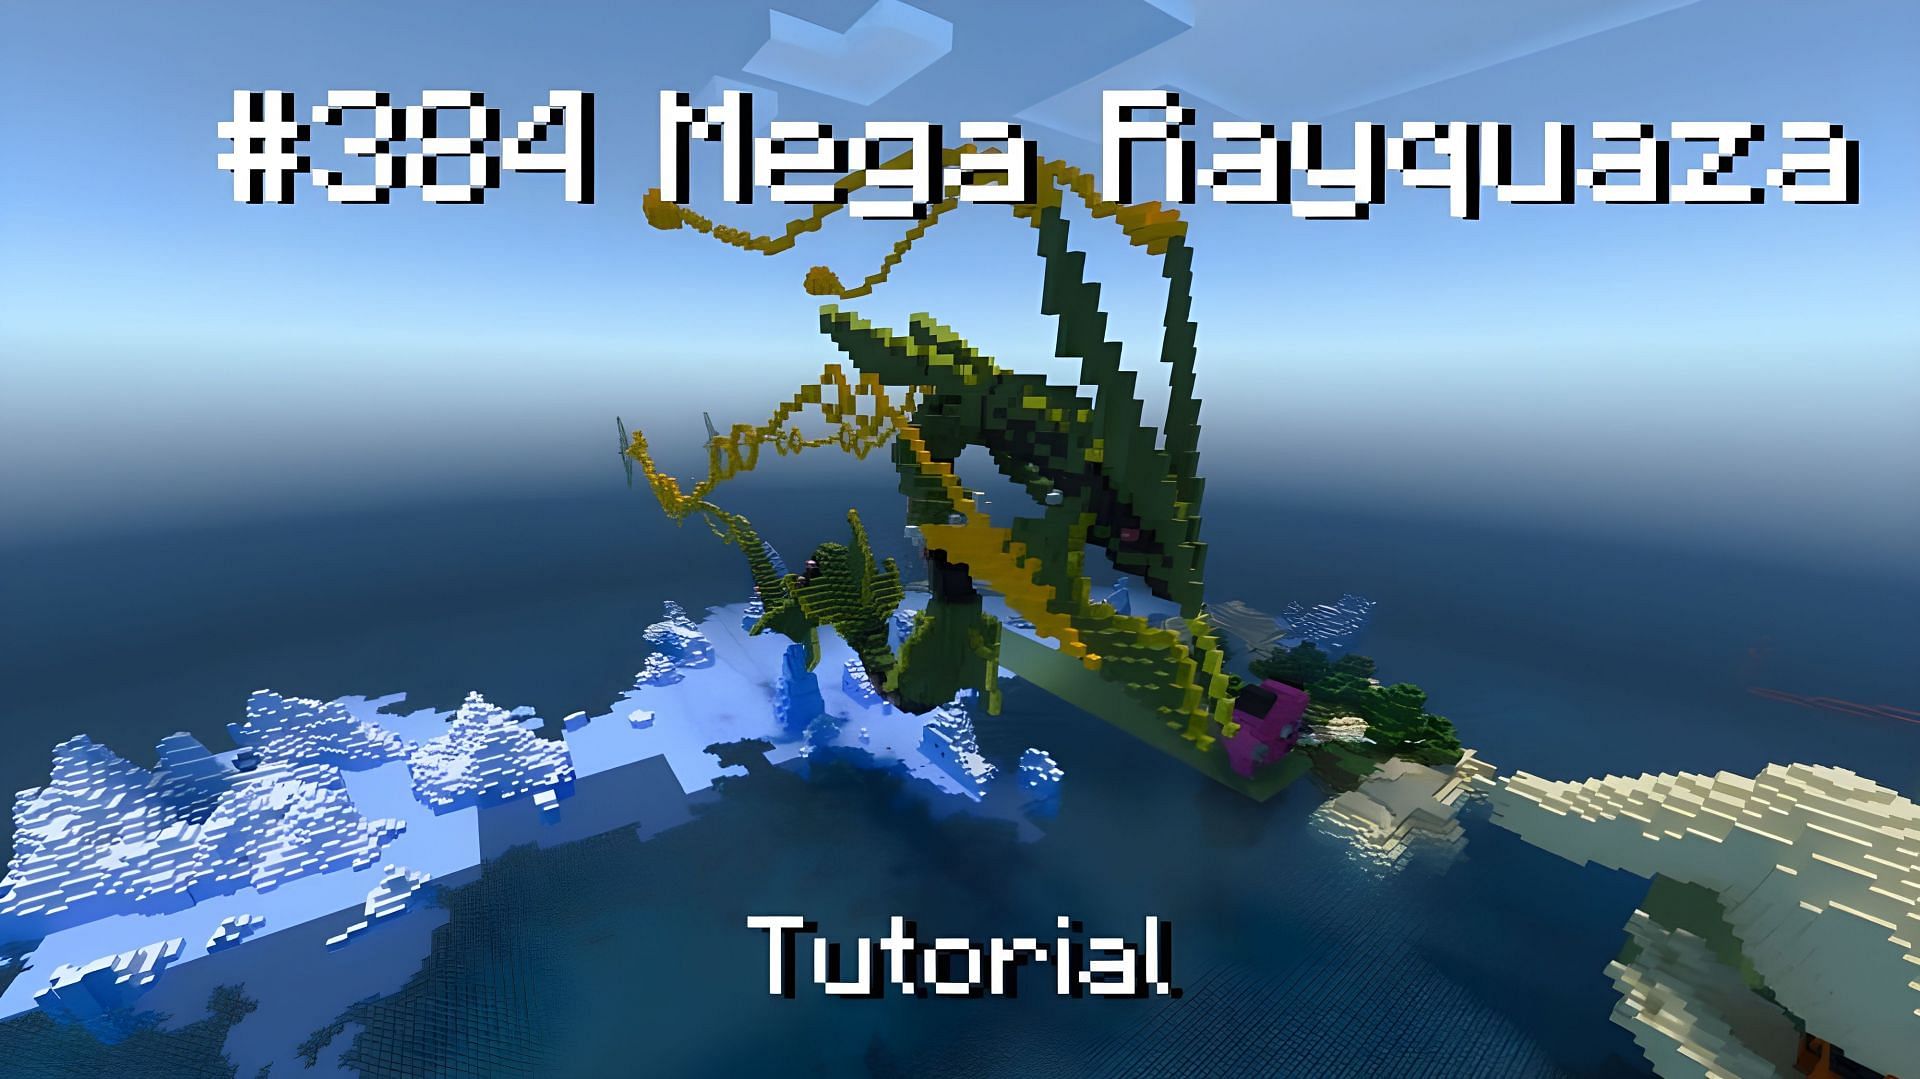 The Pokemon Mega Rayquaza Statue (Image via YouTube/Sleiny boi)